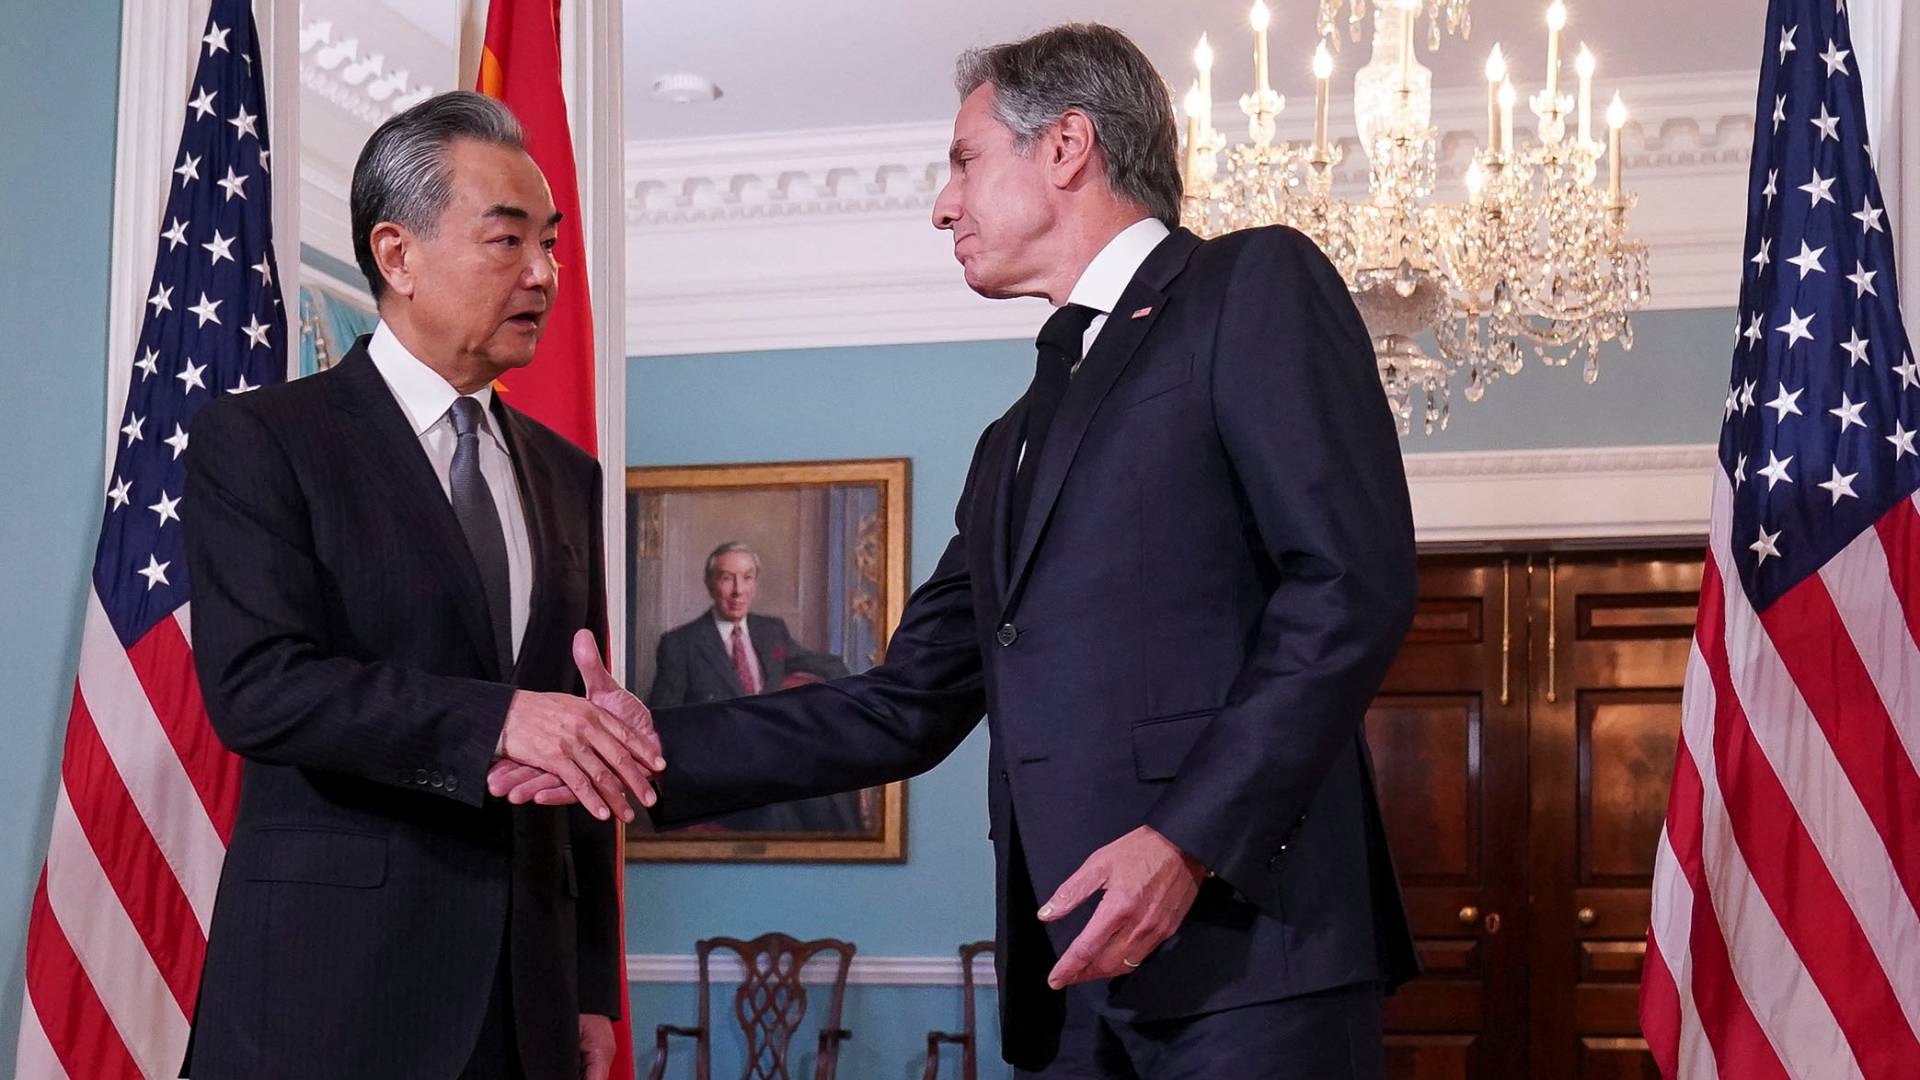 Συνομιλίες των ΥΠΕΞ ΗΠΑ και Κίνας στην Ουάσινγκτον ενόψει πιθανής συνάντησης κορυφής Μπάιντεν- Σι